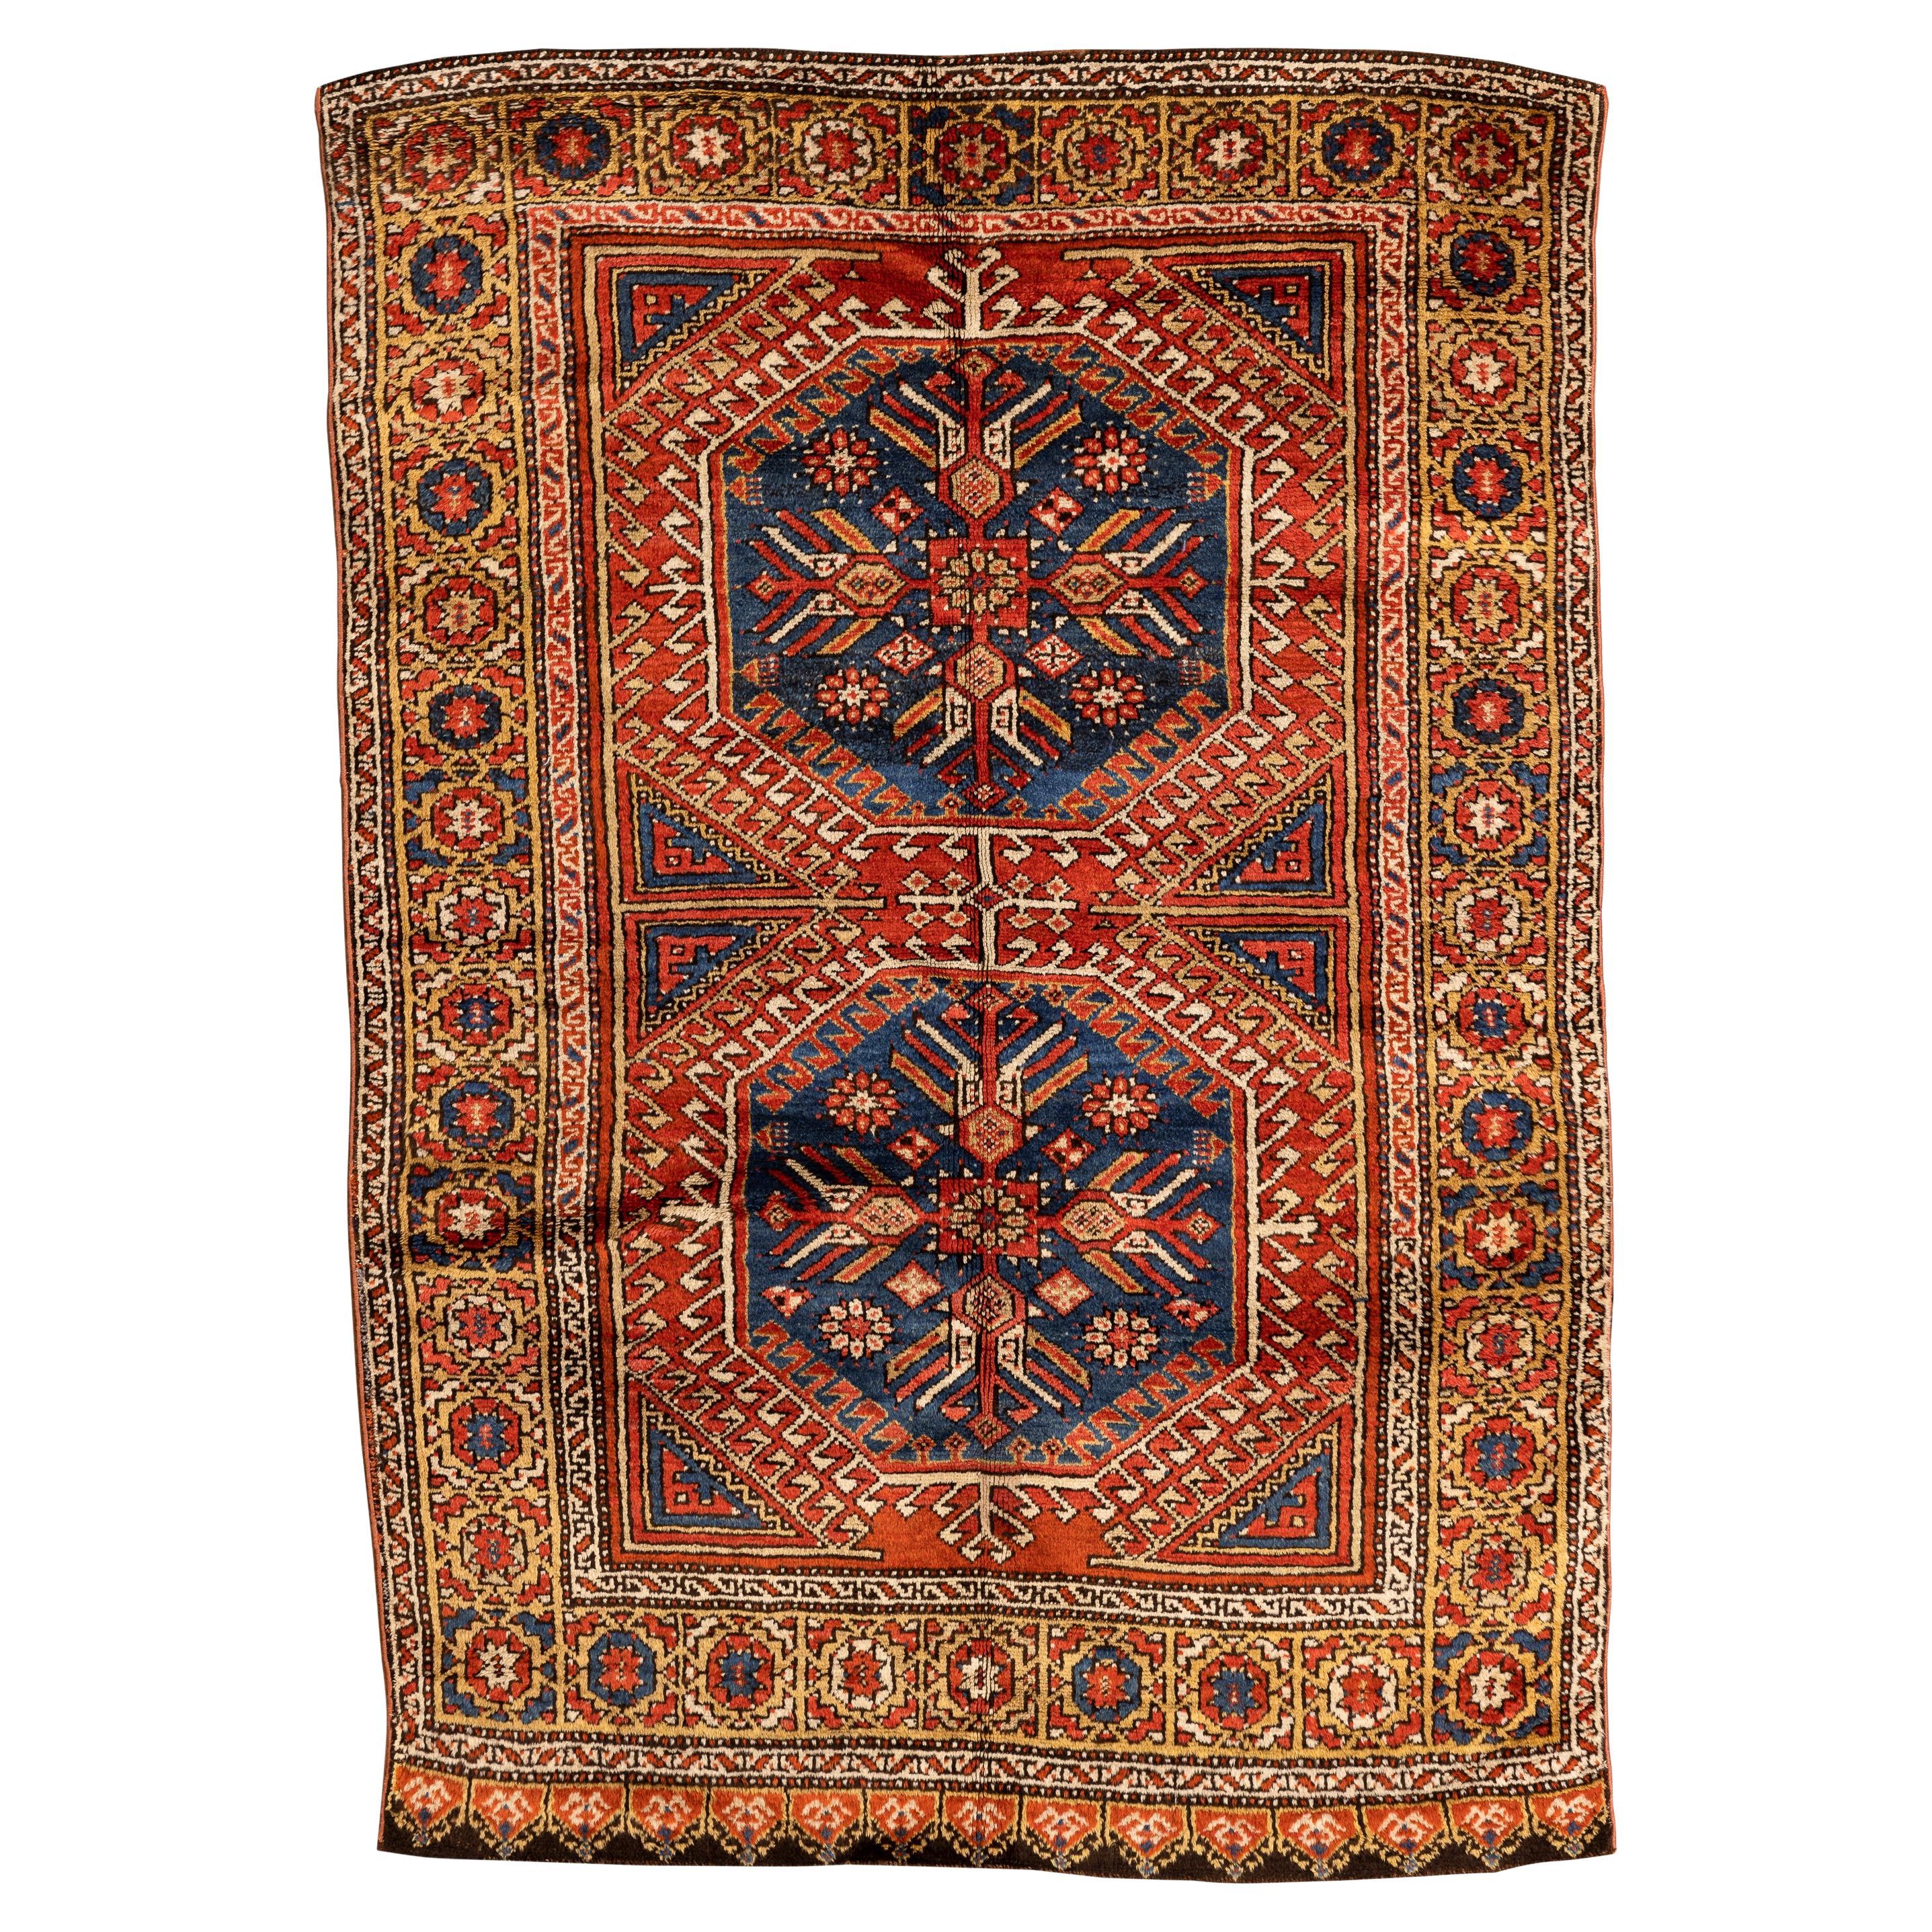 Konya - Zentralanatolien

Dieser Konya-Teppich ist einer der berühmtesten und begehrtesten türkischen Teppiche wegen seiner prächtigen Farben, seiner leuchtenden Wolle und seines kühnen Nomadendesigns. Mit zwei geometrischen Medaillons, den so